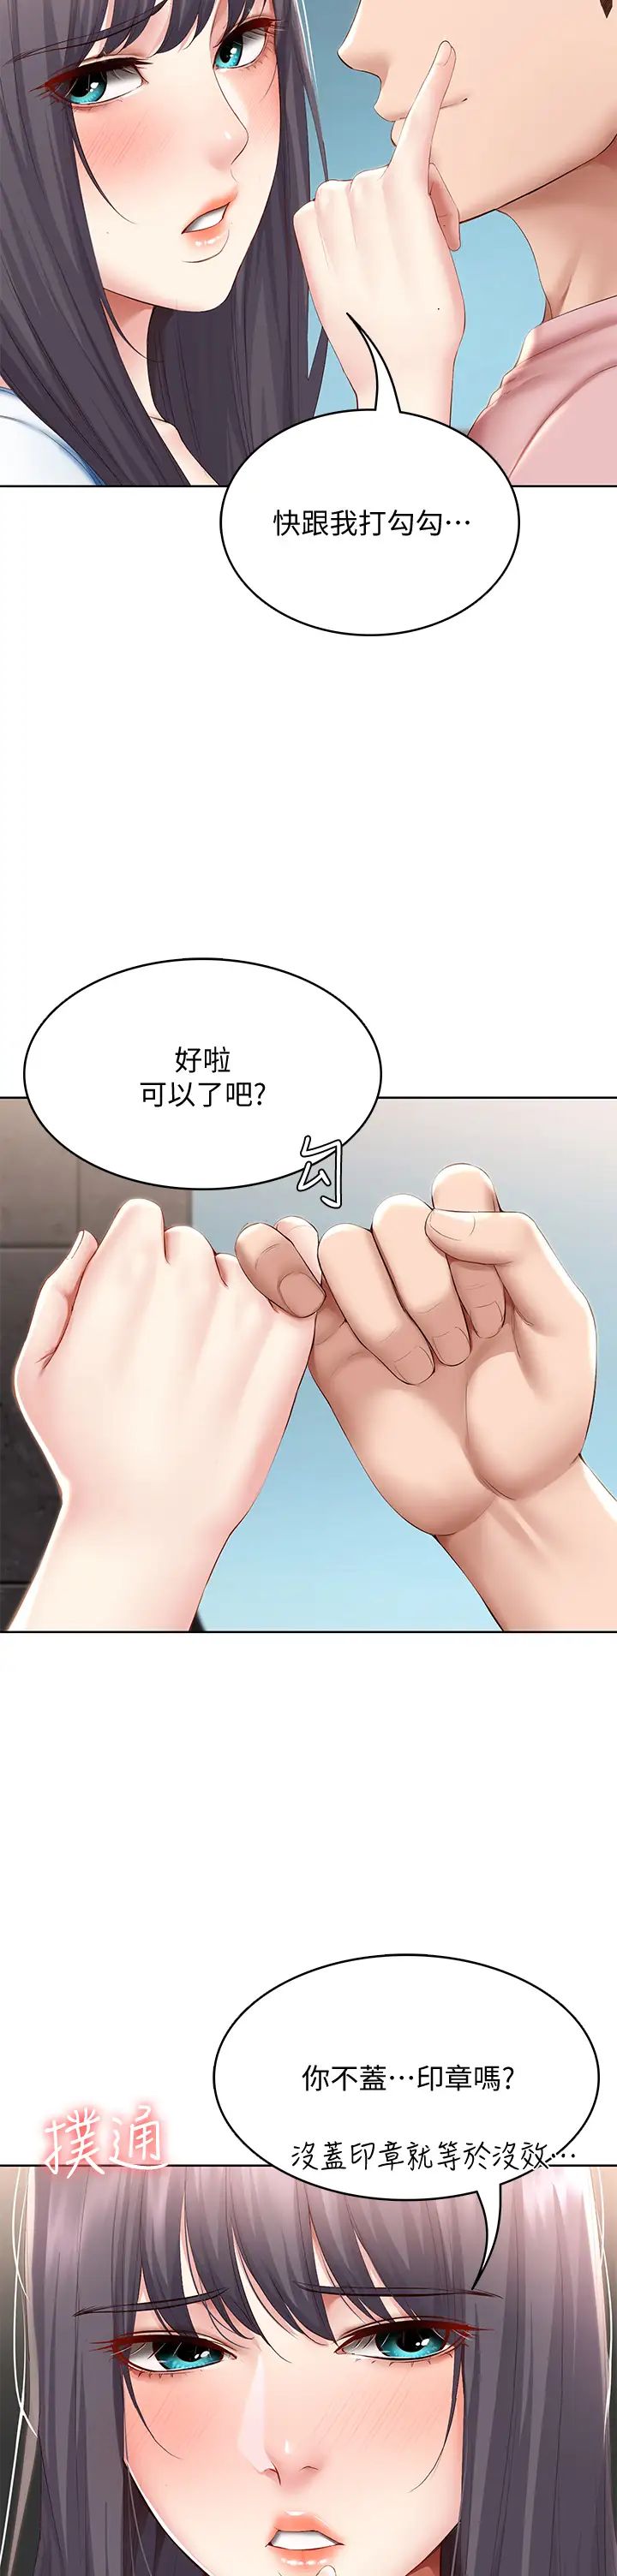 韩国污漫画 寄宿日記 第75话比基尼派对 13